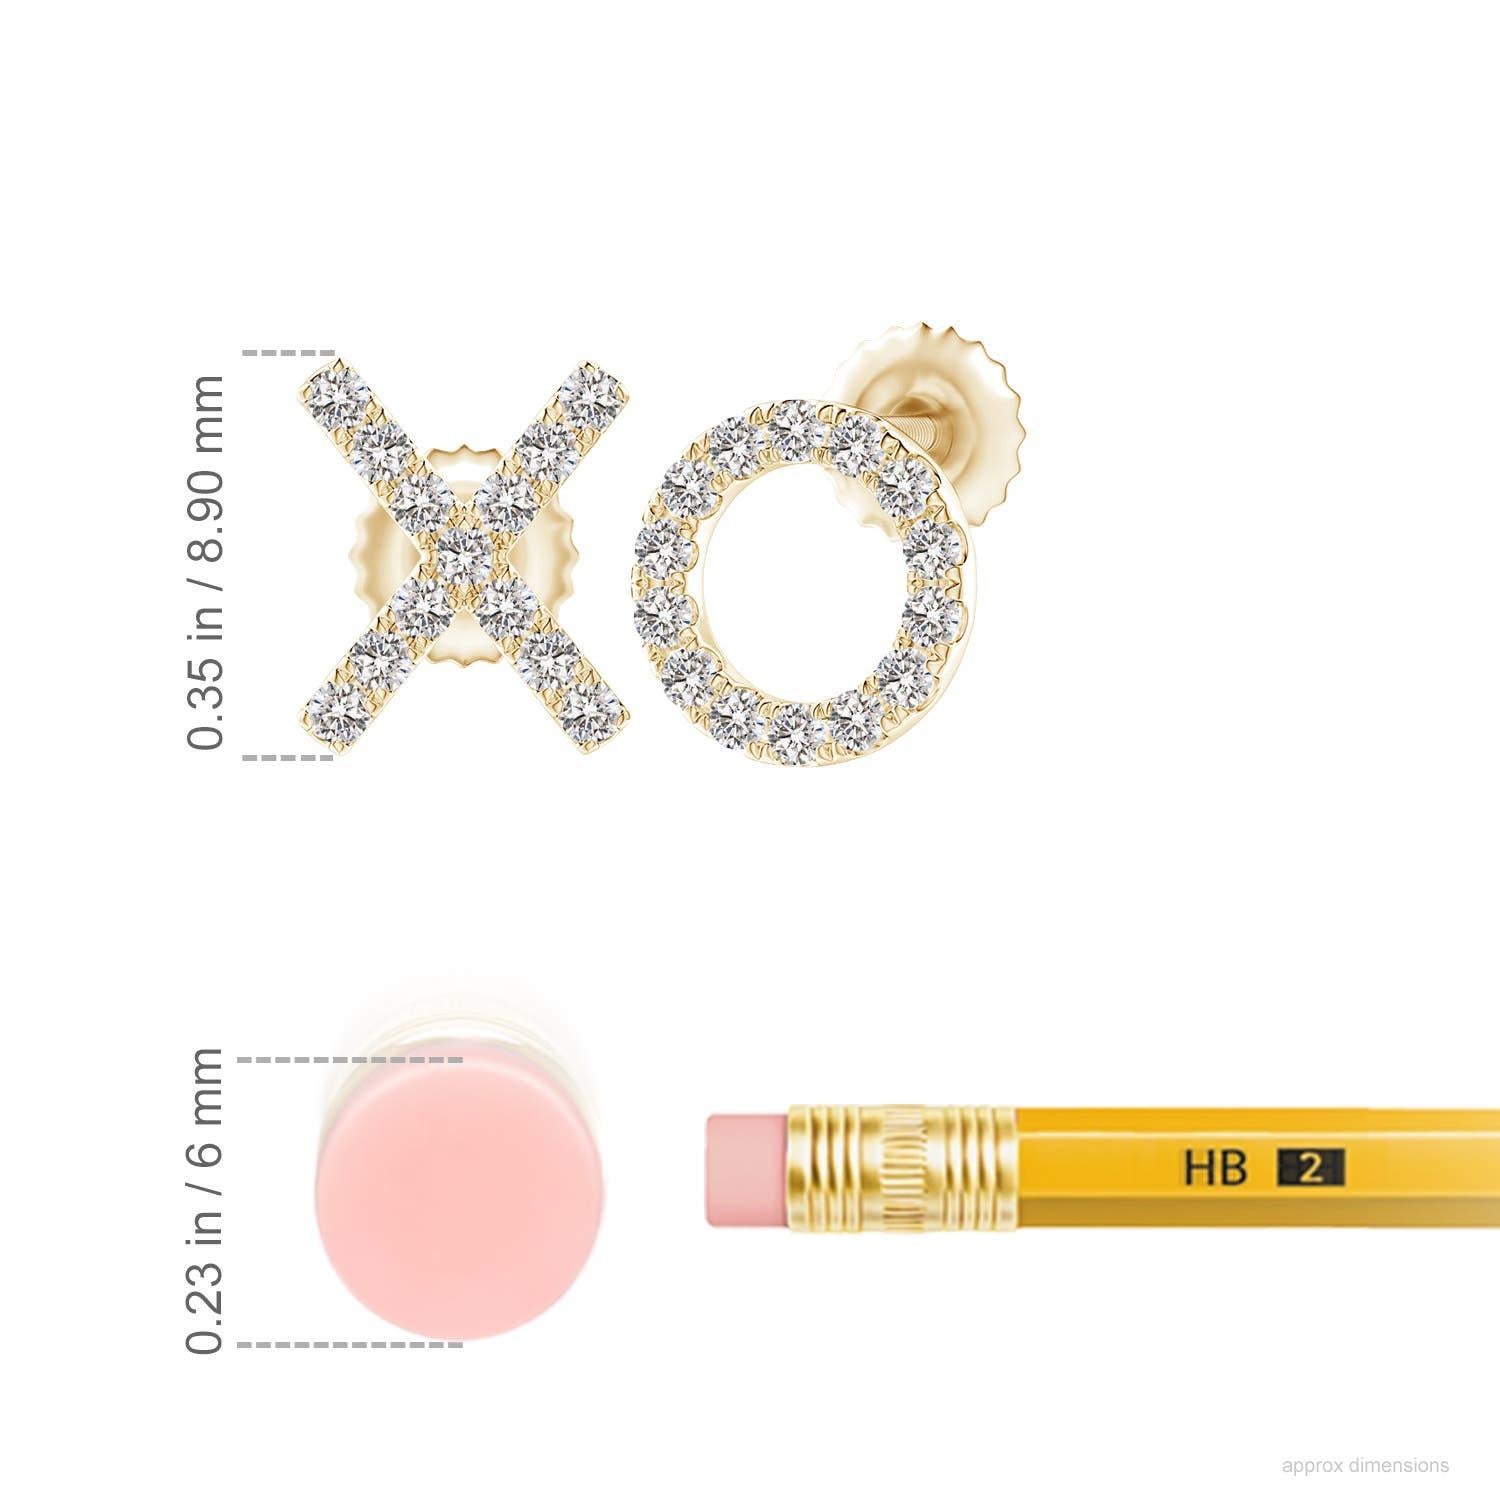 Die XO-Ohrstecker aus 14 Karat Gelbgold sind einfach faszinierend. Funkelnde runde Diamanten in einer U-Pava-Fassung schmücken das XO-Muster und verleihen diesen bezaubernden Ohrsteckern eine schillernde Note.
Der Diamant ist der Geburtsstein des